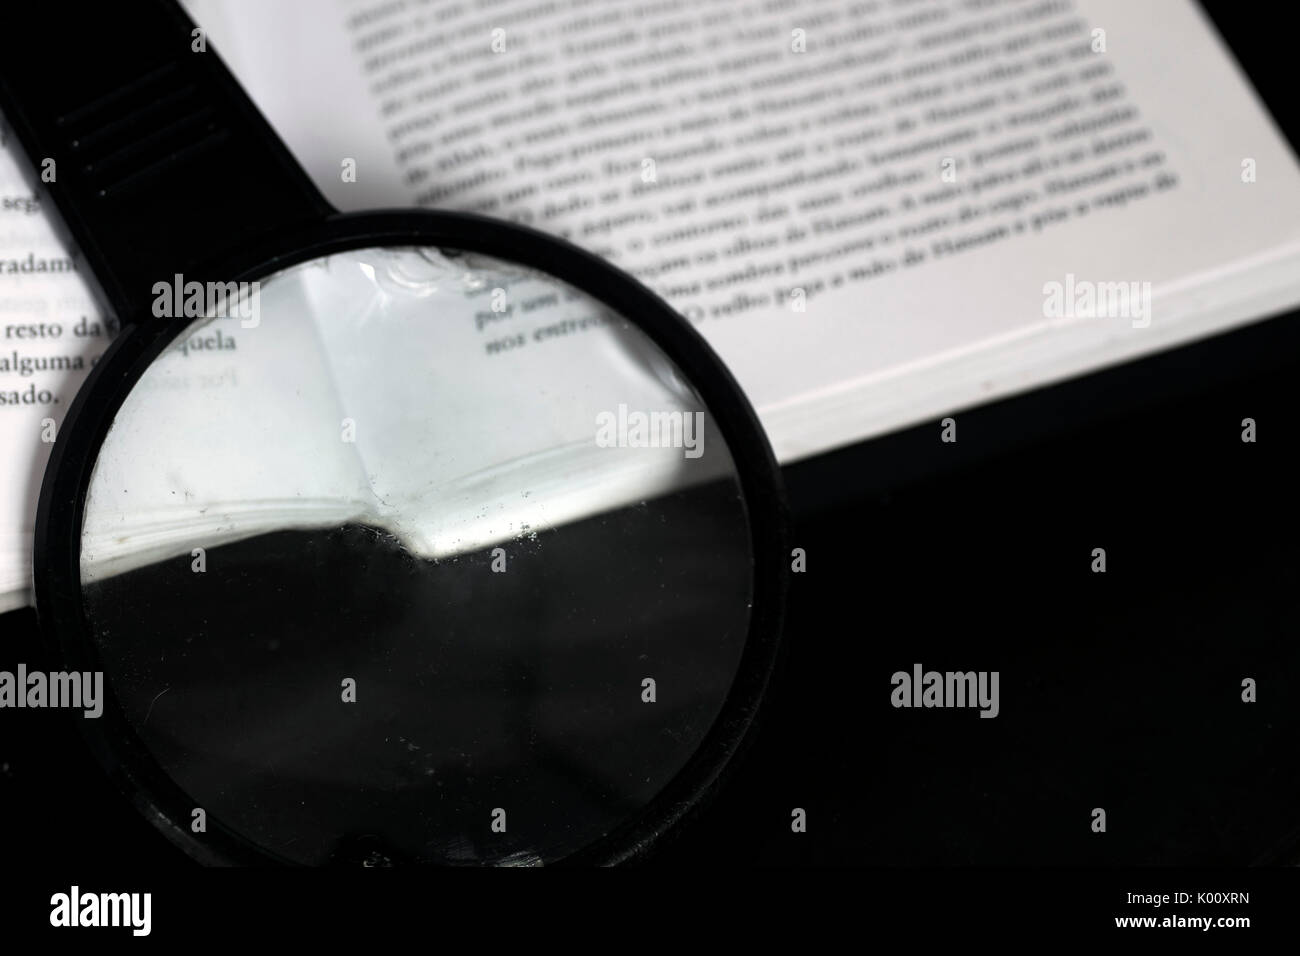 Lente di ingrandimento sulla parte superiore di un libro aperto sulla parte superiore di un nero riflettente la superficie di vetro Foto Stock